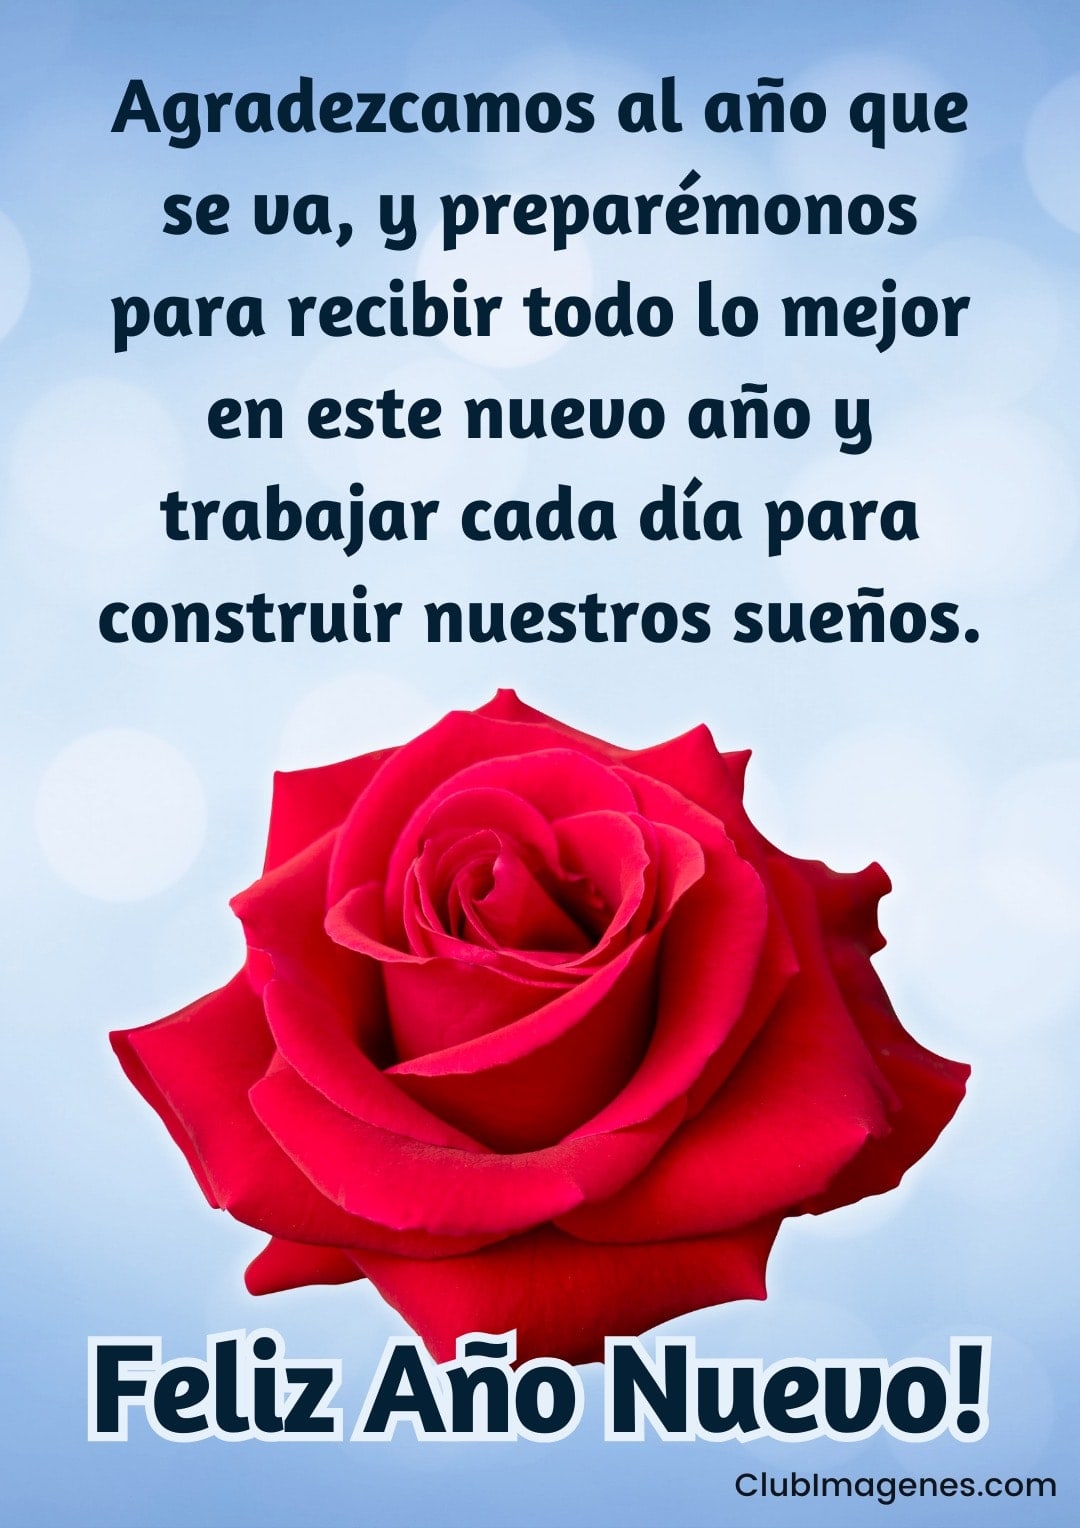 Rosa roja con mensaje de reflexión sobre gratitud y preparación para recibir lo mejor y construir sueños en el Año Nuevo